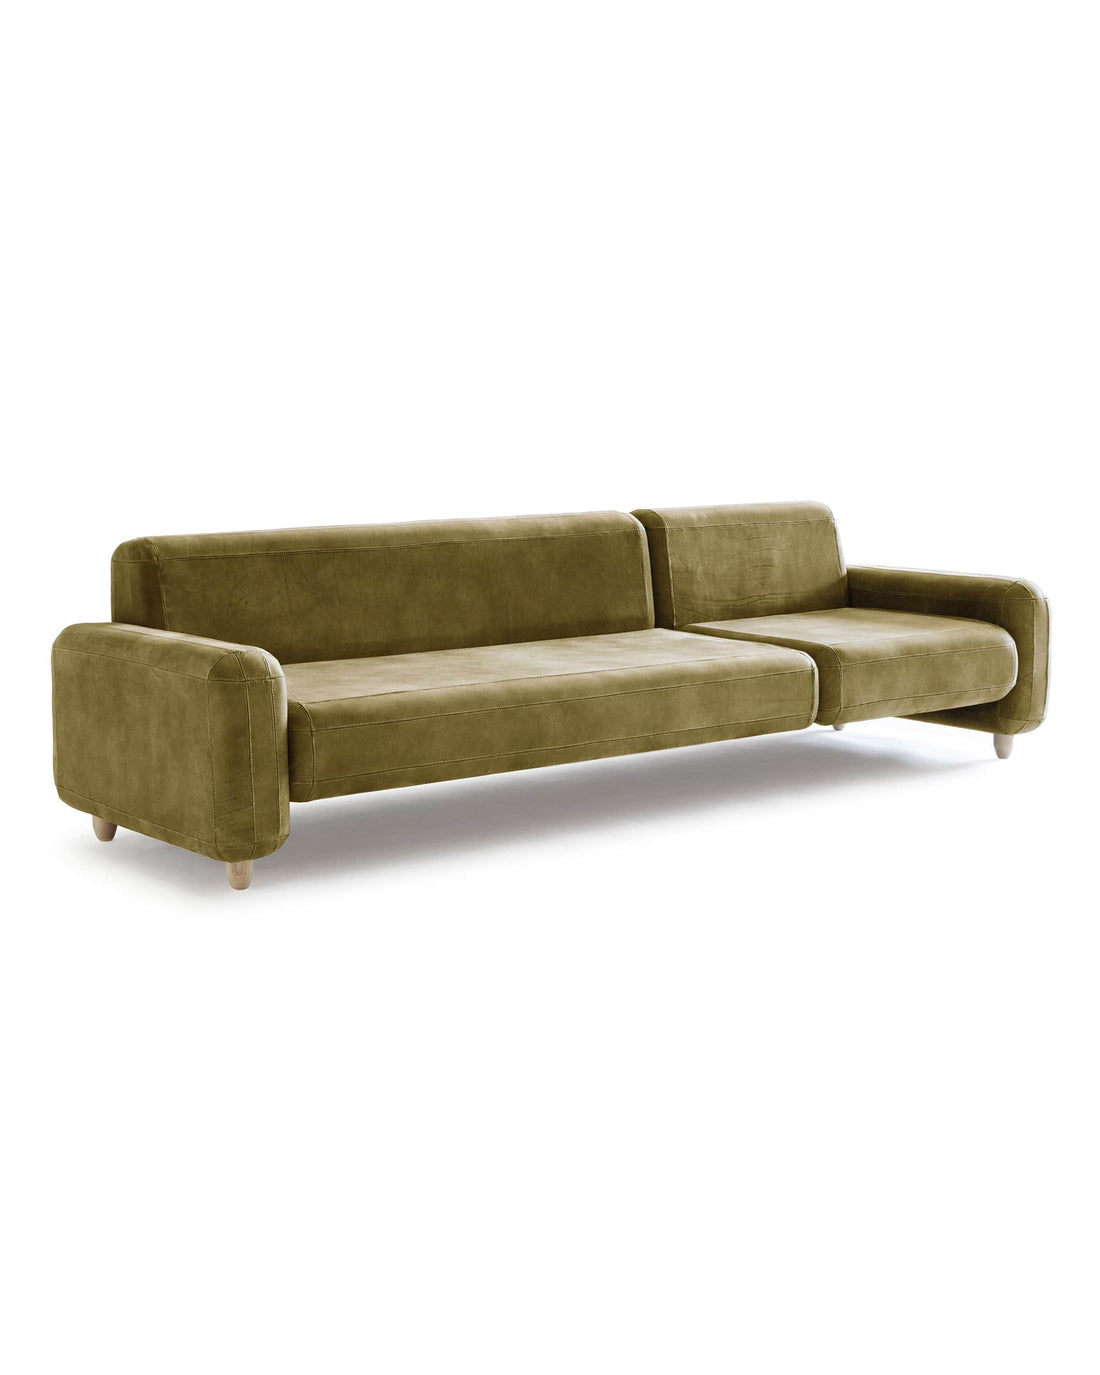 Traco sofa - 3